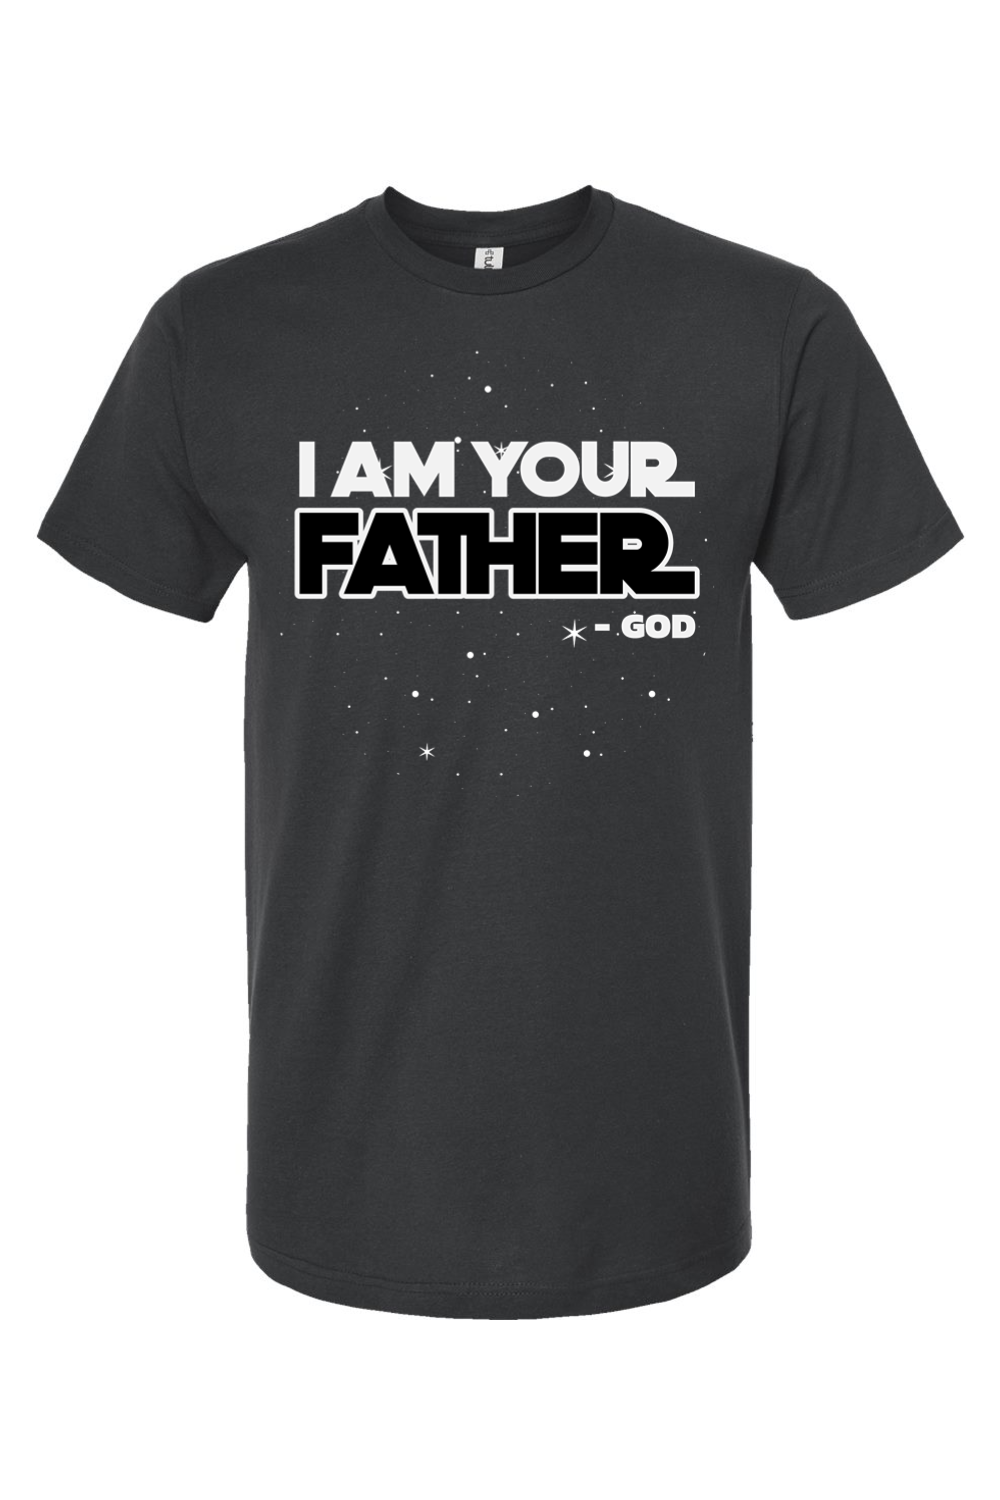 I am Your Father (Star Wars parody)